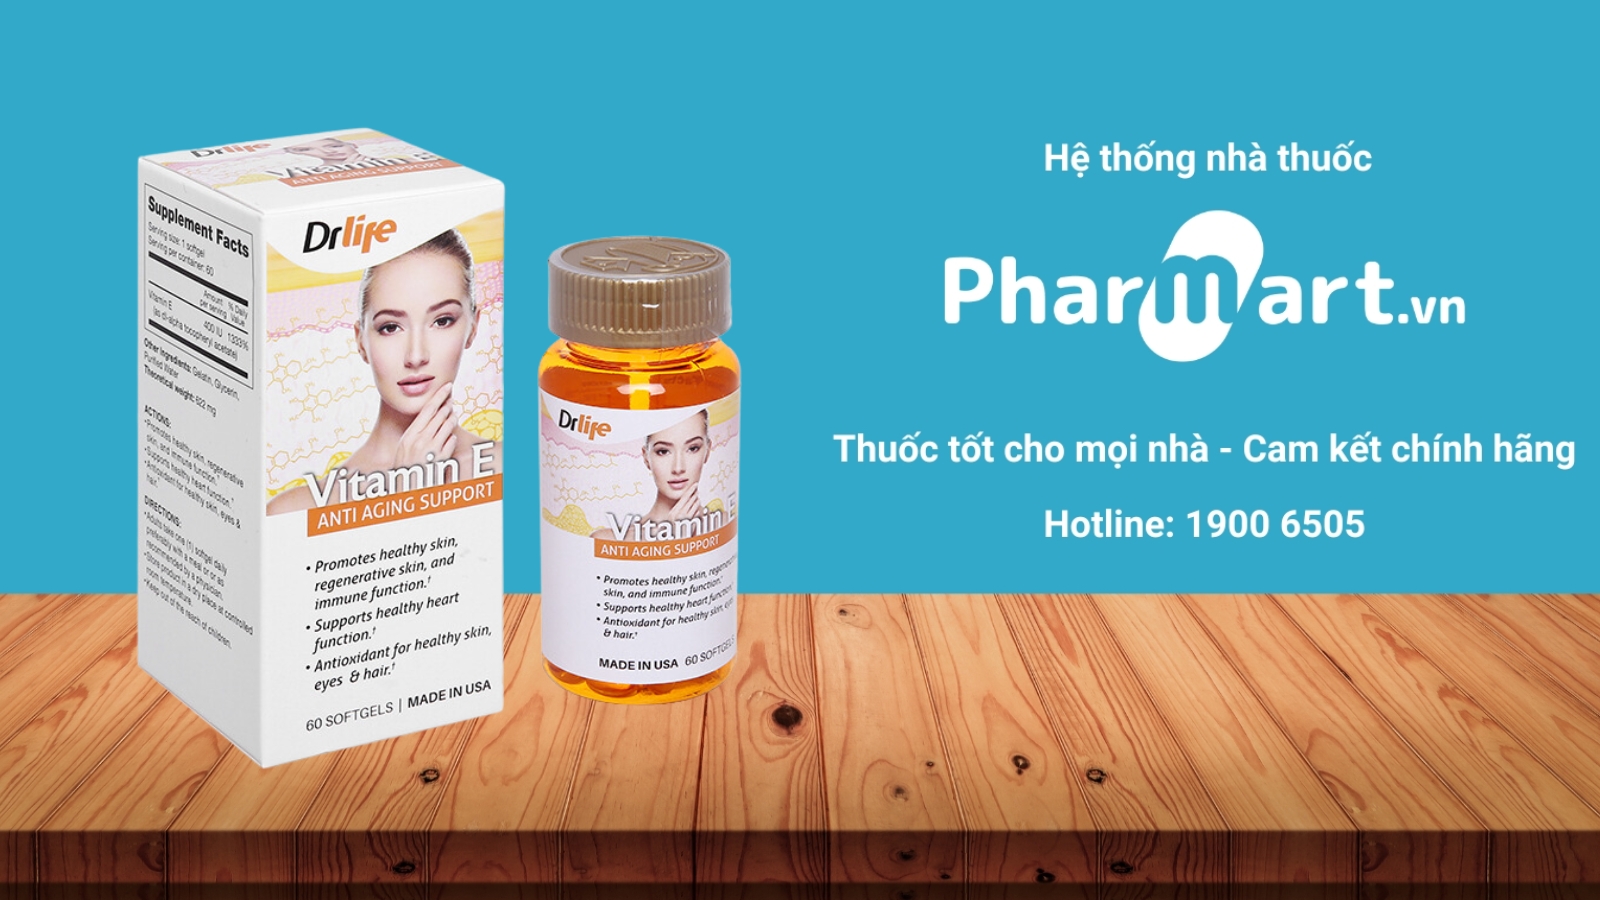 Mua Vitamin E Drlife chính hãng tại Pharmart.vn.